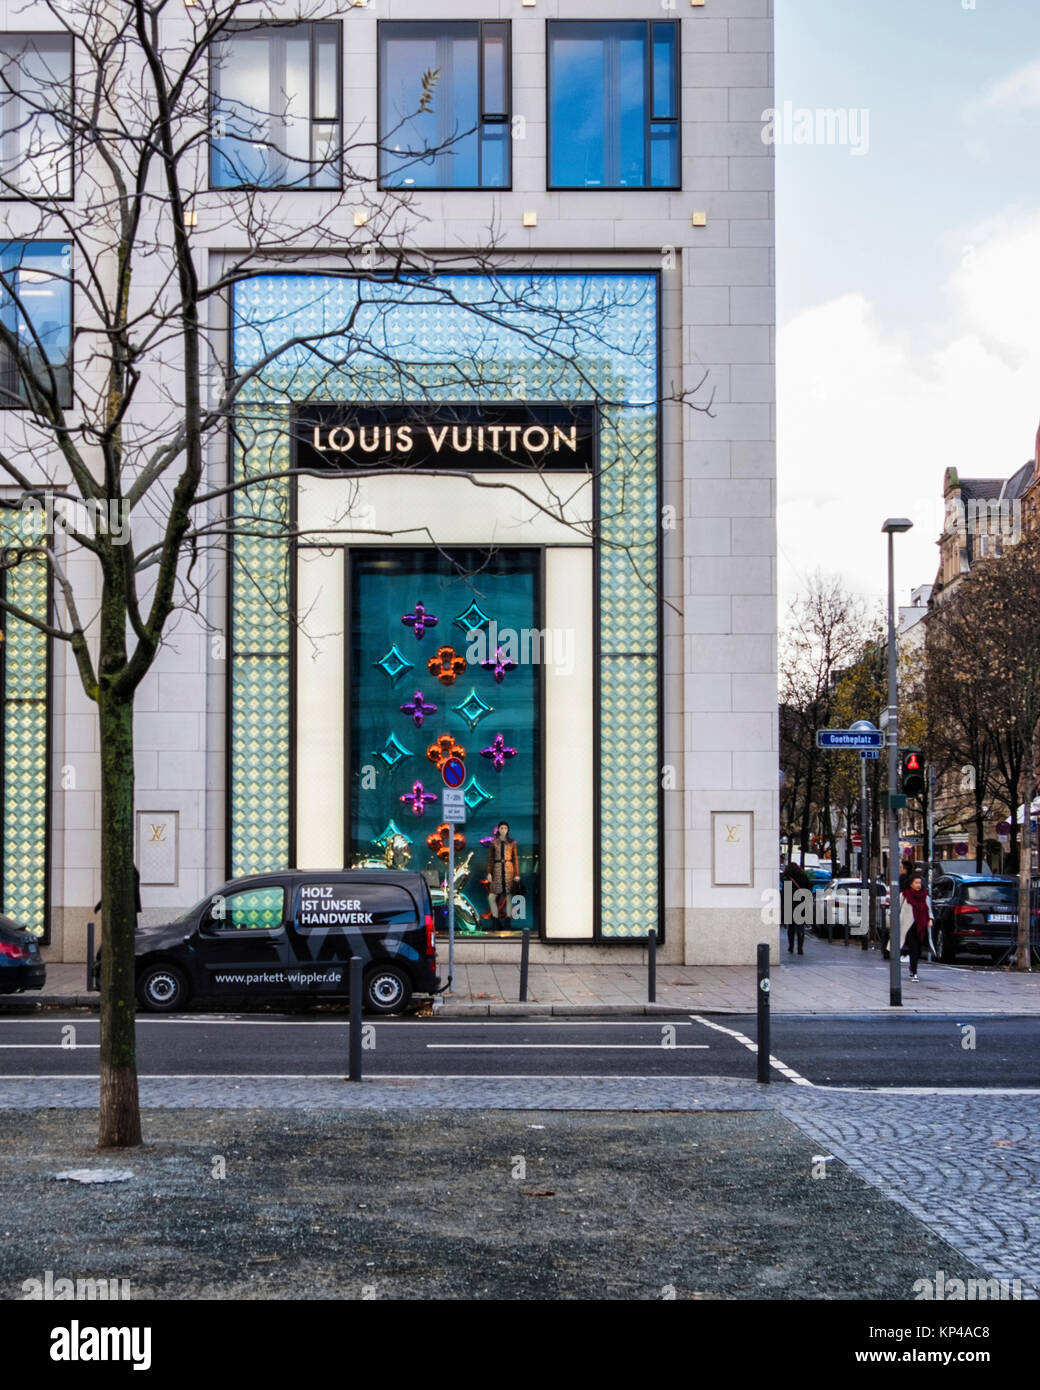 Francfort, Allemagne,Goetheplatz.Louis Vuitton designer un magasin de vêtements, boutique de mode avec fenêtre d'affichage et de décorations de Noël Banque D'Images